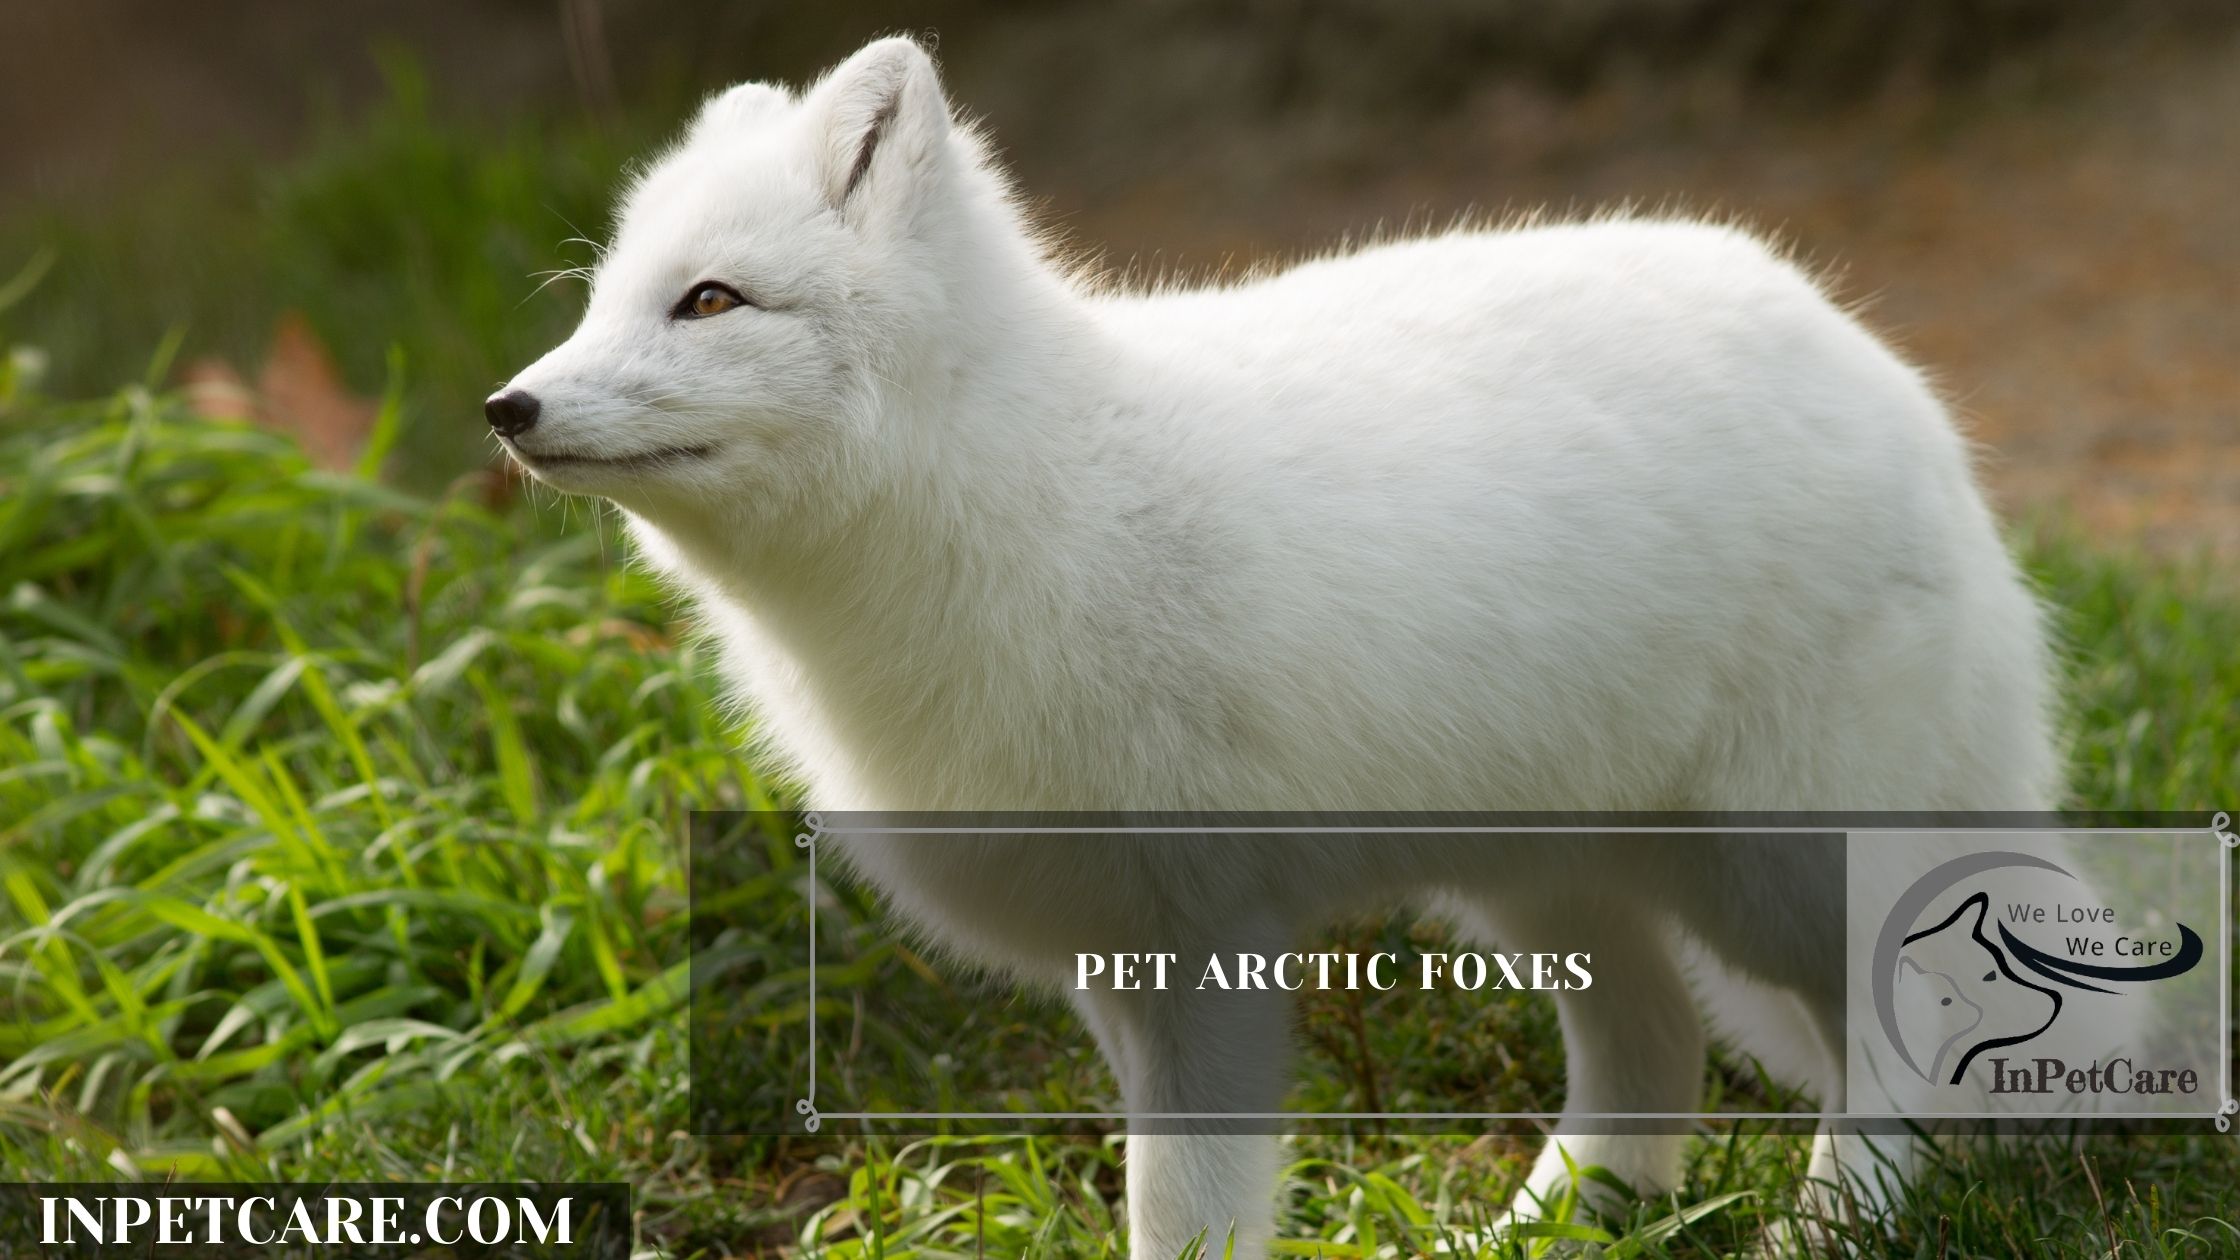 Pet Arctic Foxes